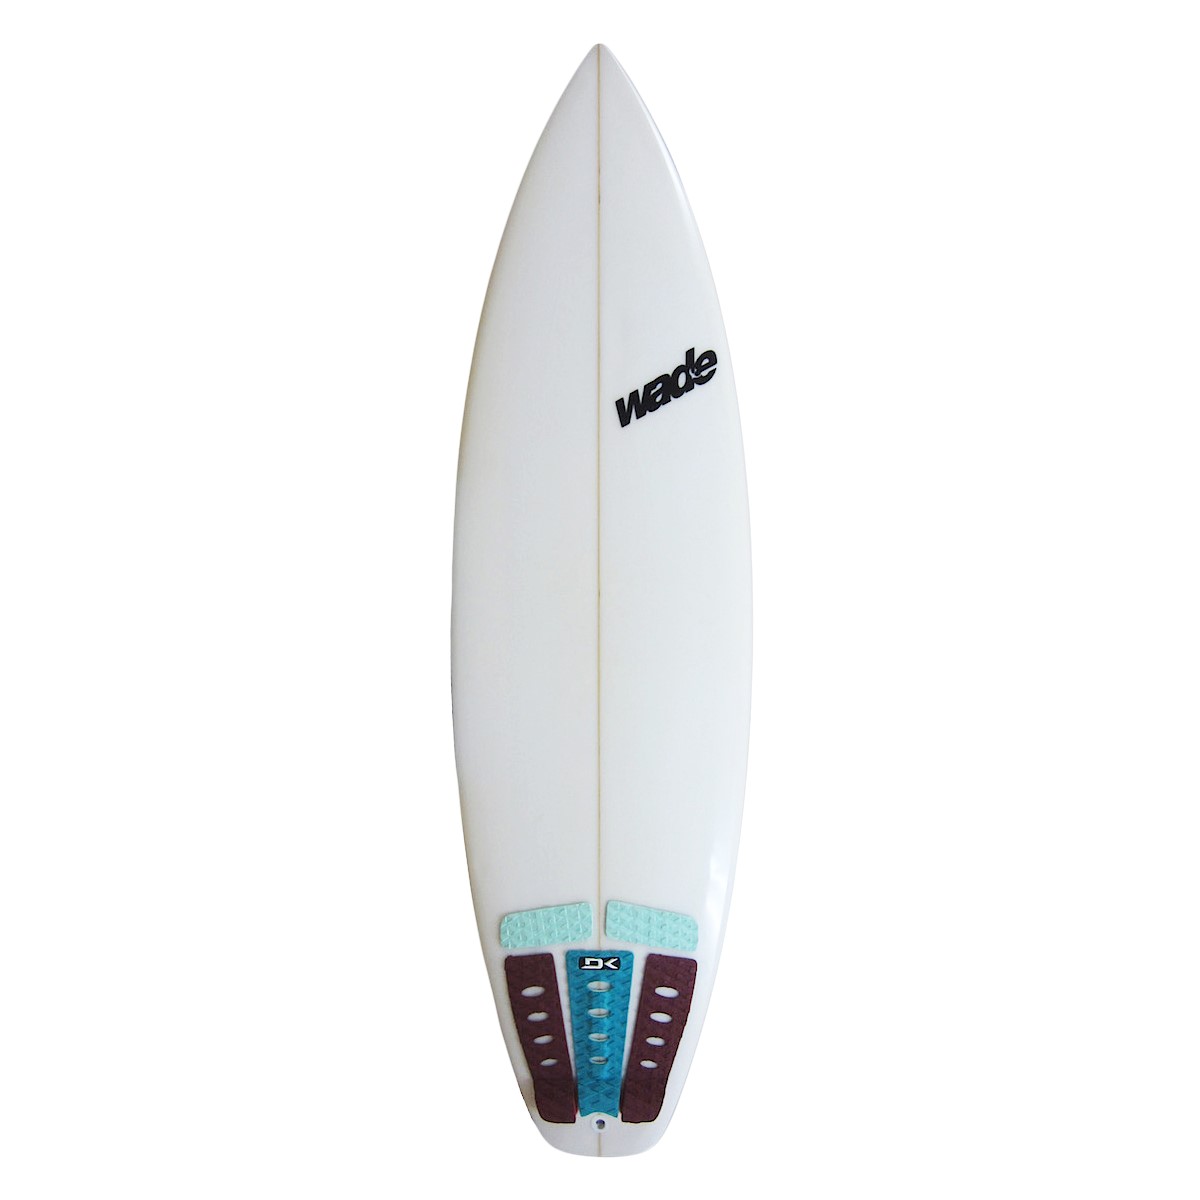 Wade ToKoro surfboard - サーフィン